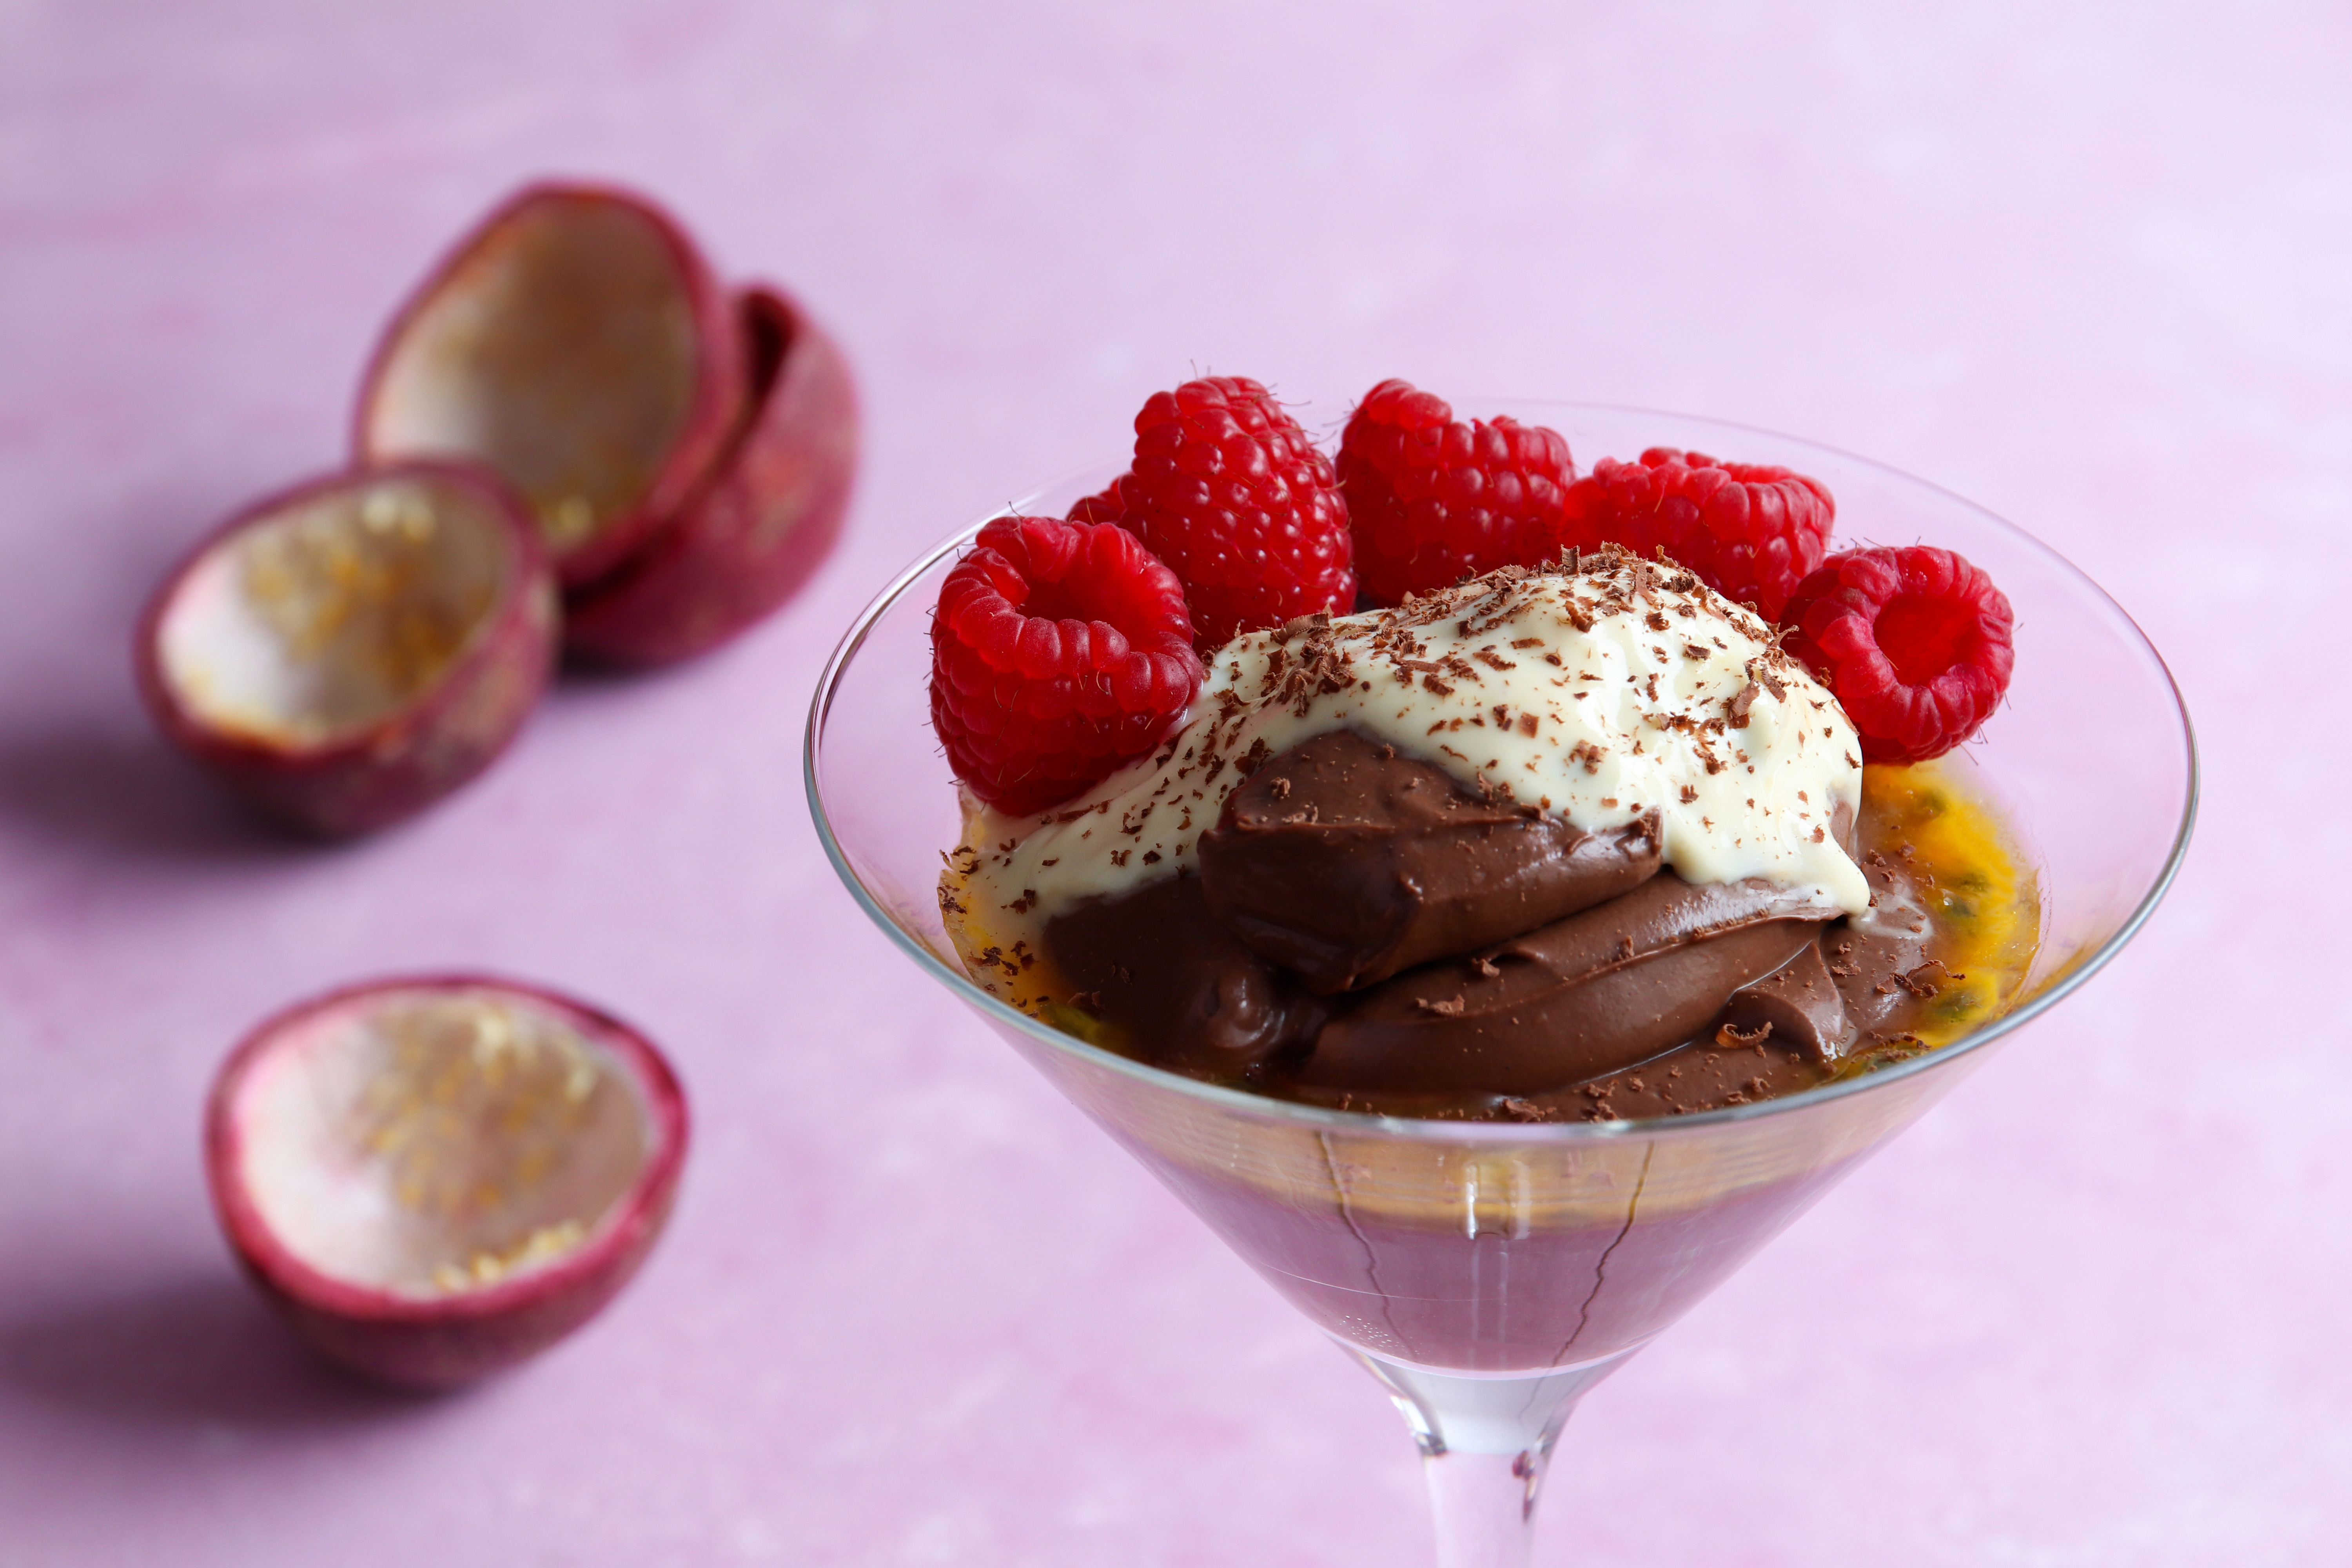 阿芙罗狄蒂的欲望:巧克力慕斯加百香果酸奶